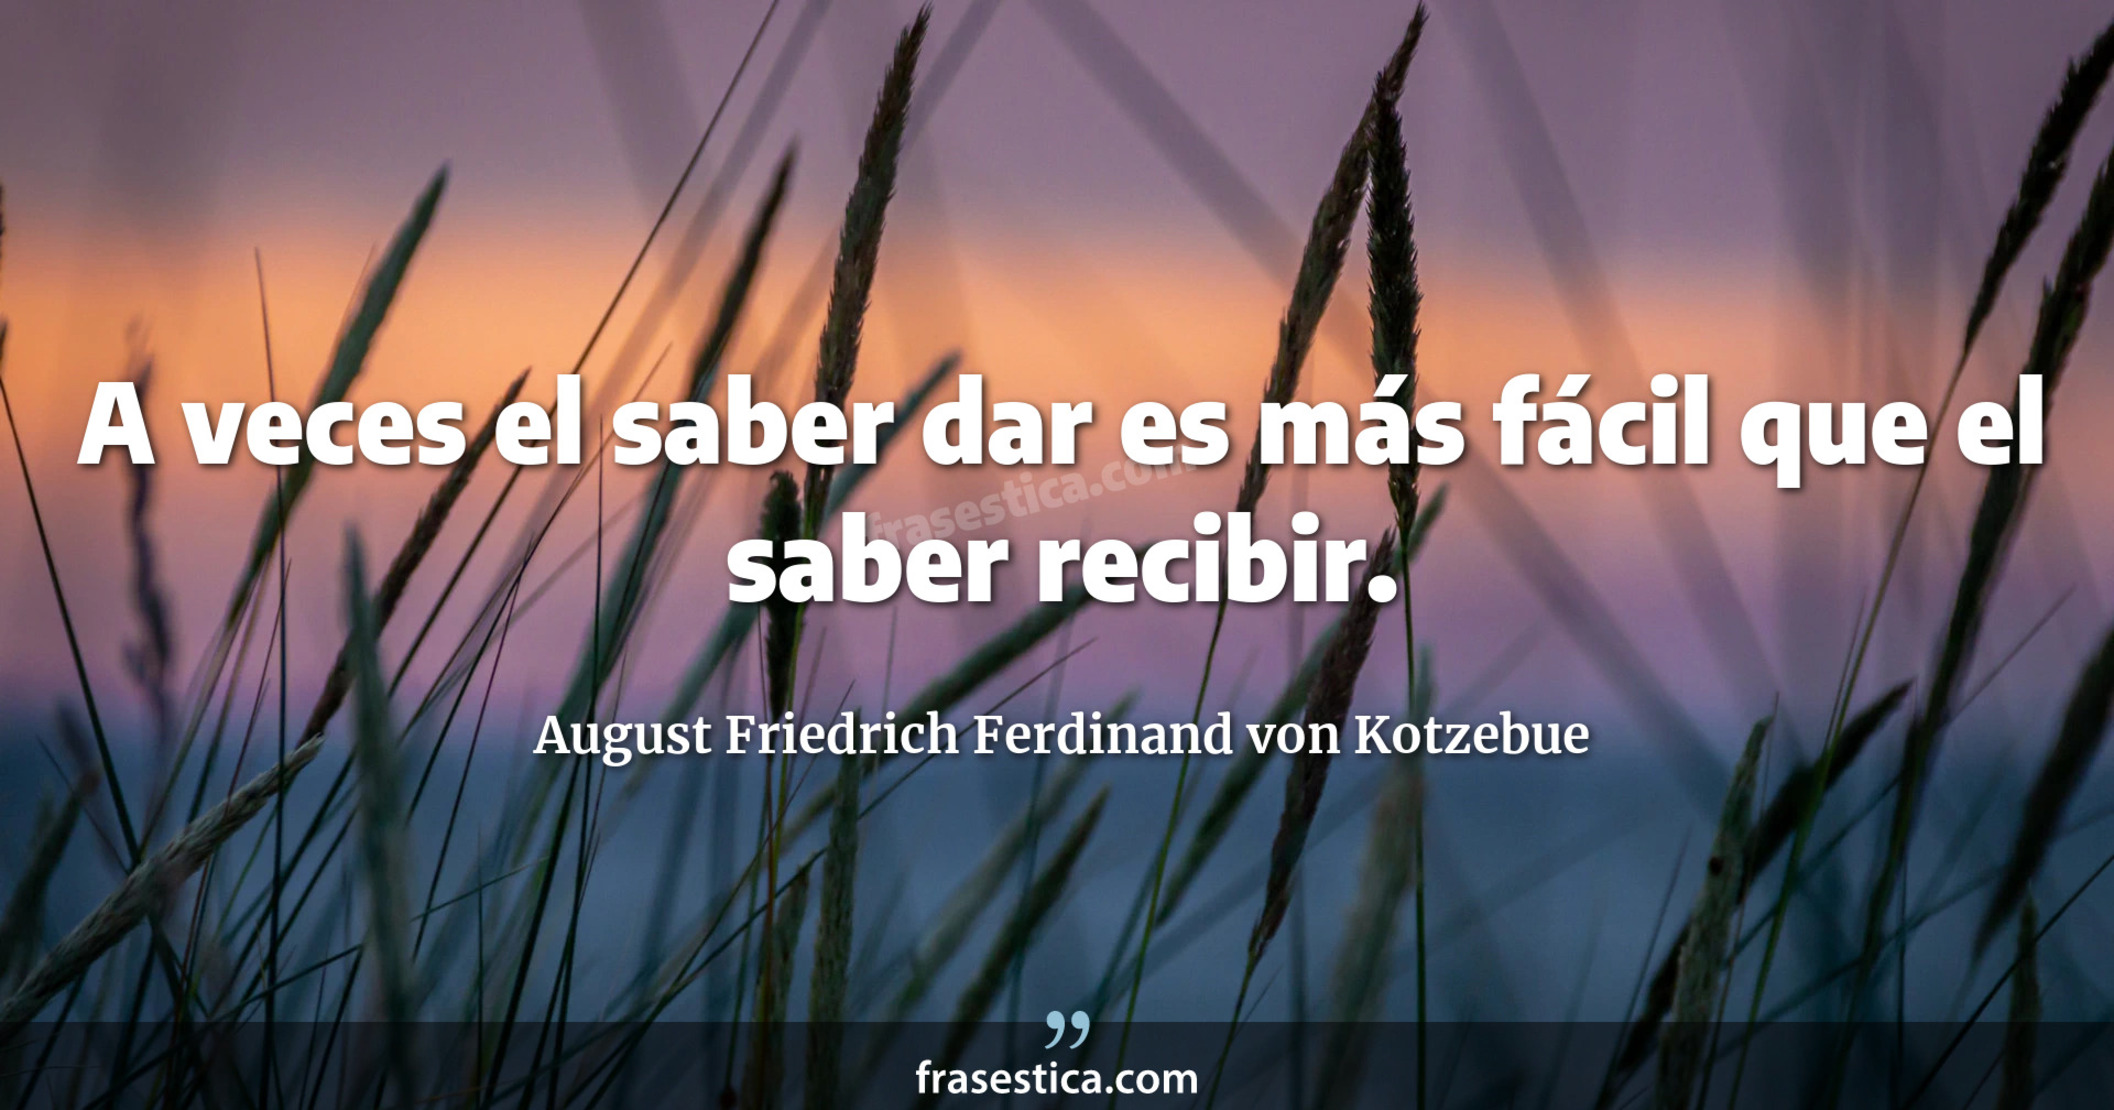 A veces el saber dar es más fácil que el saber recibir. - August Friedrich Ferdinand von Kotzebue